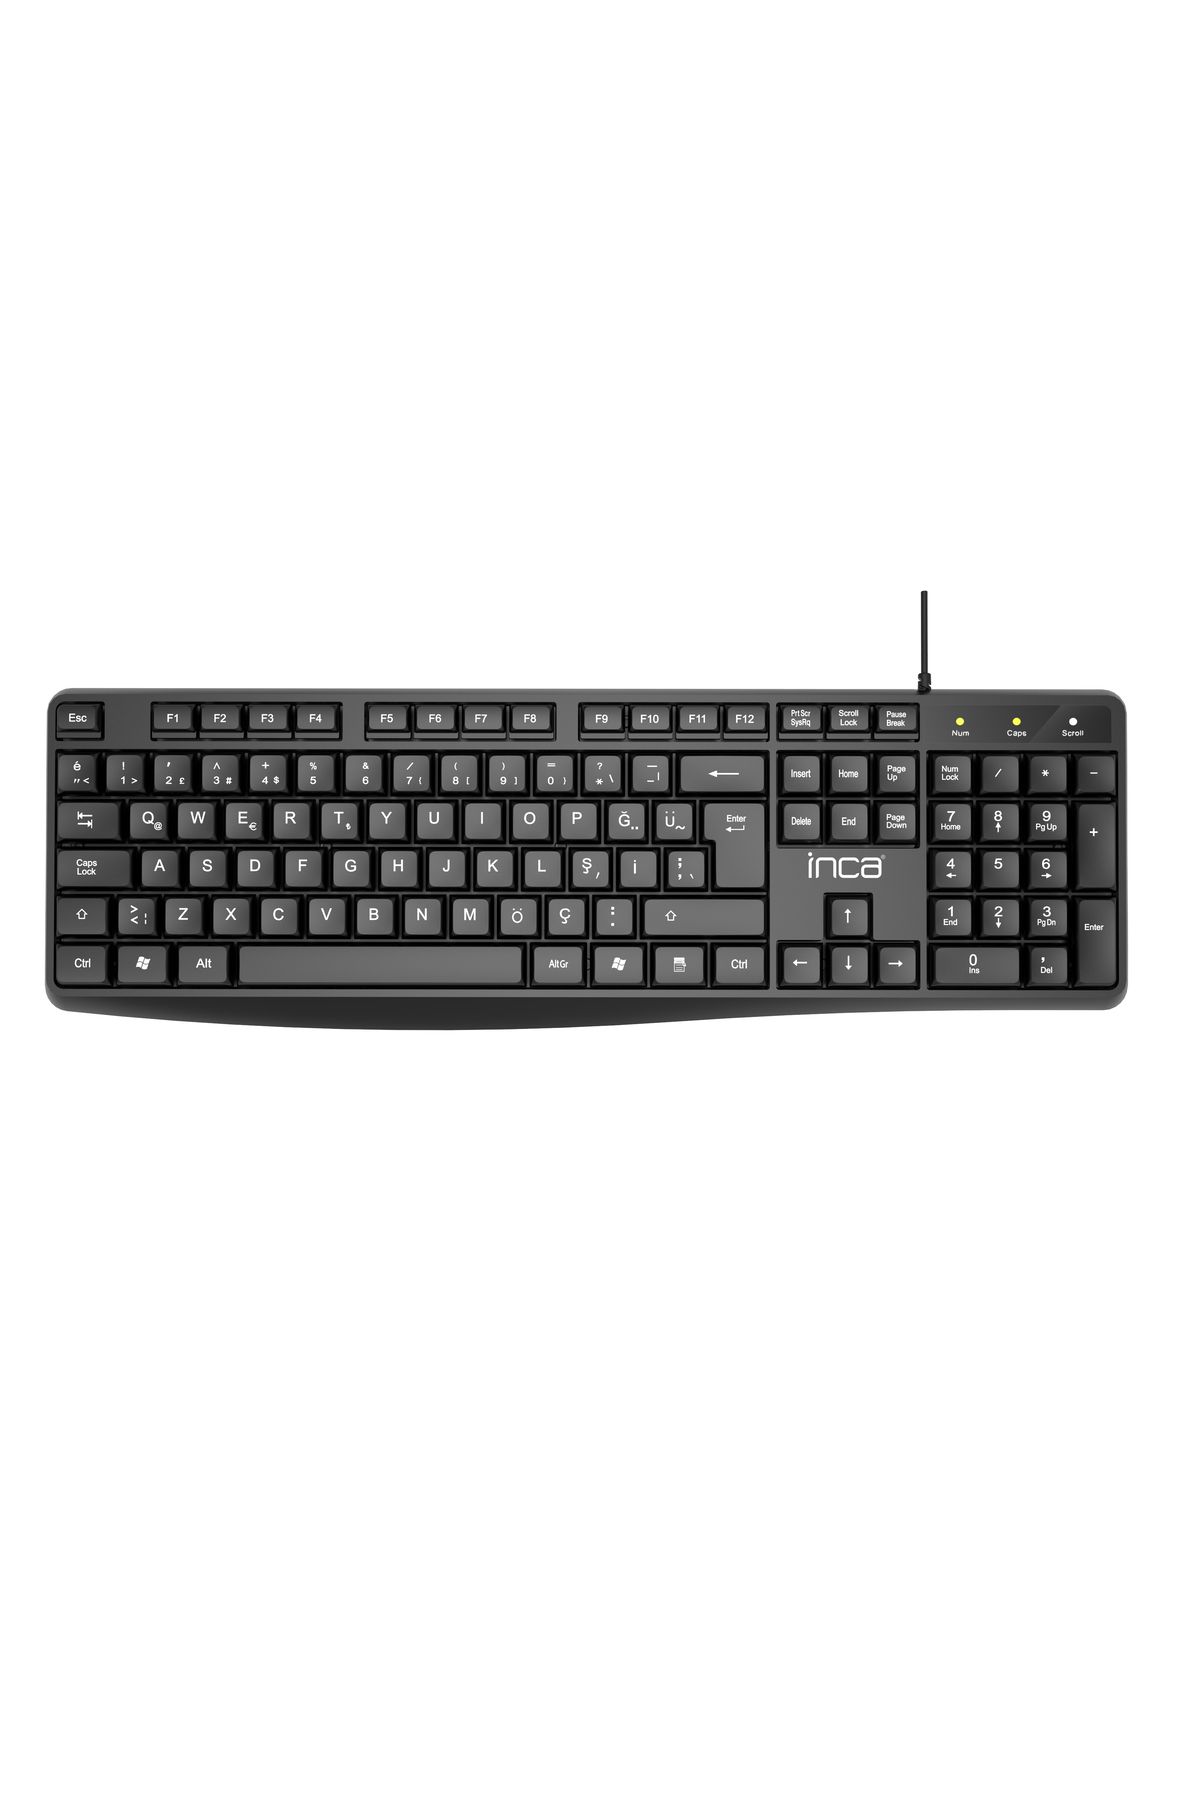 Inca Ik-275qu Q Multımedıa Soft Touch Black Keyboard